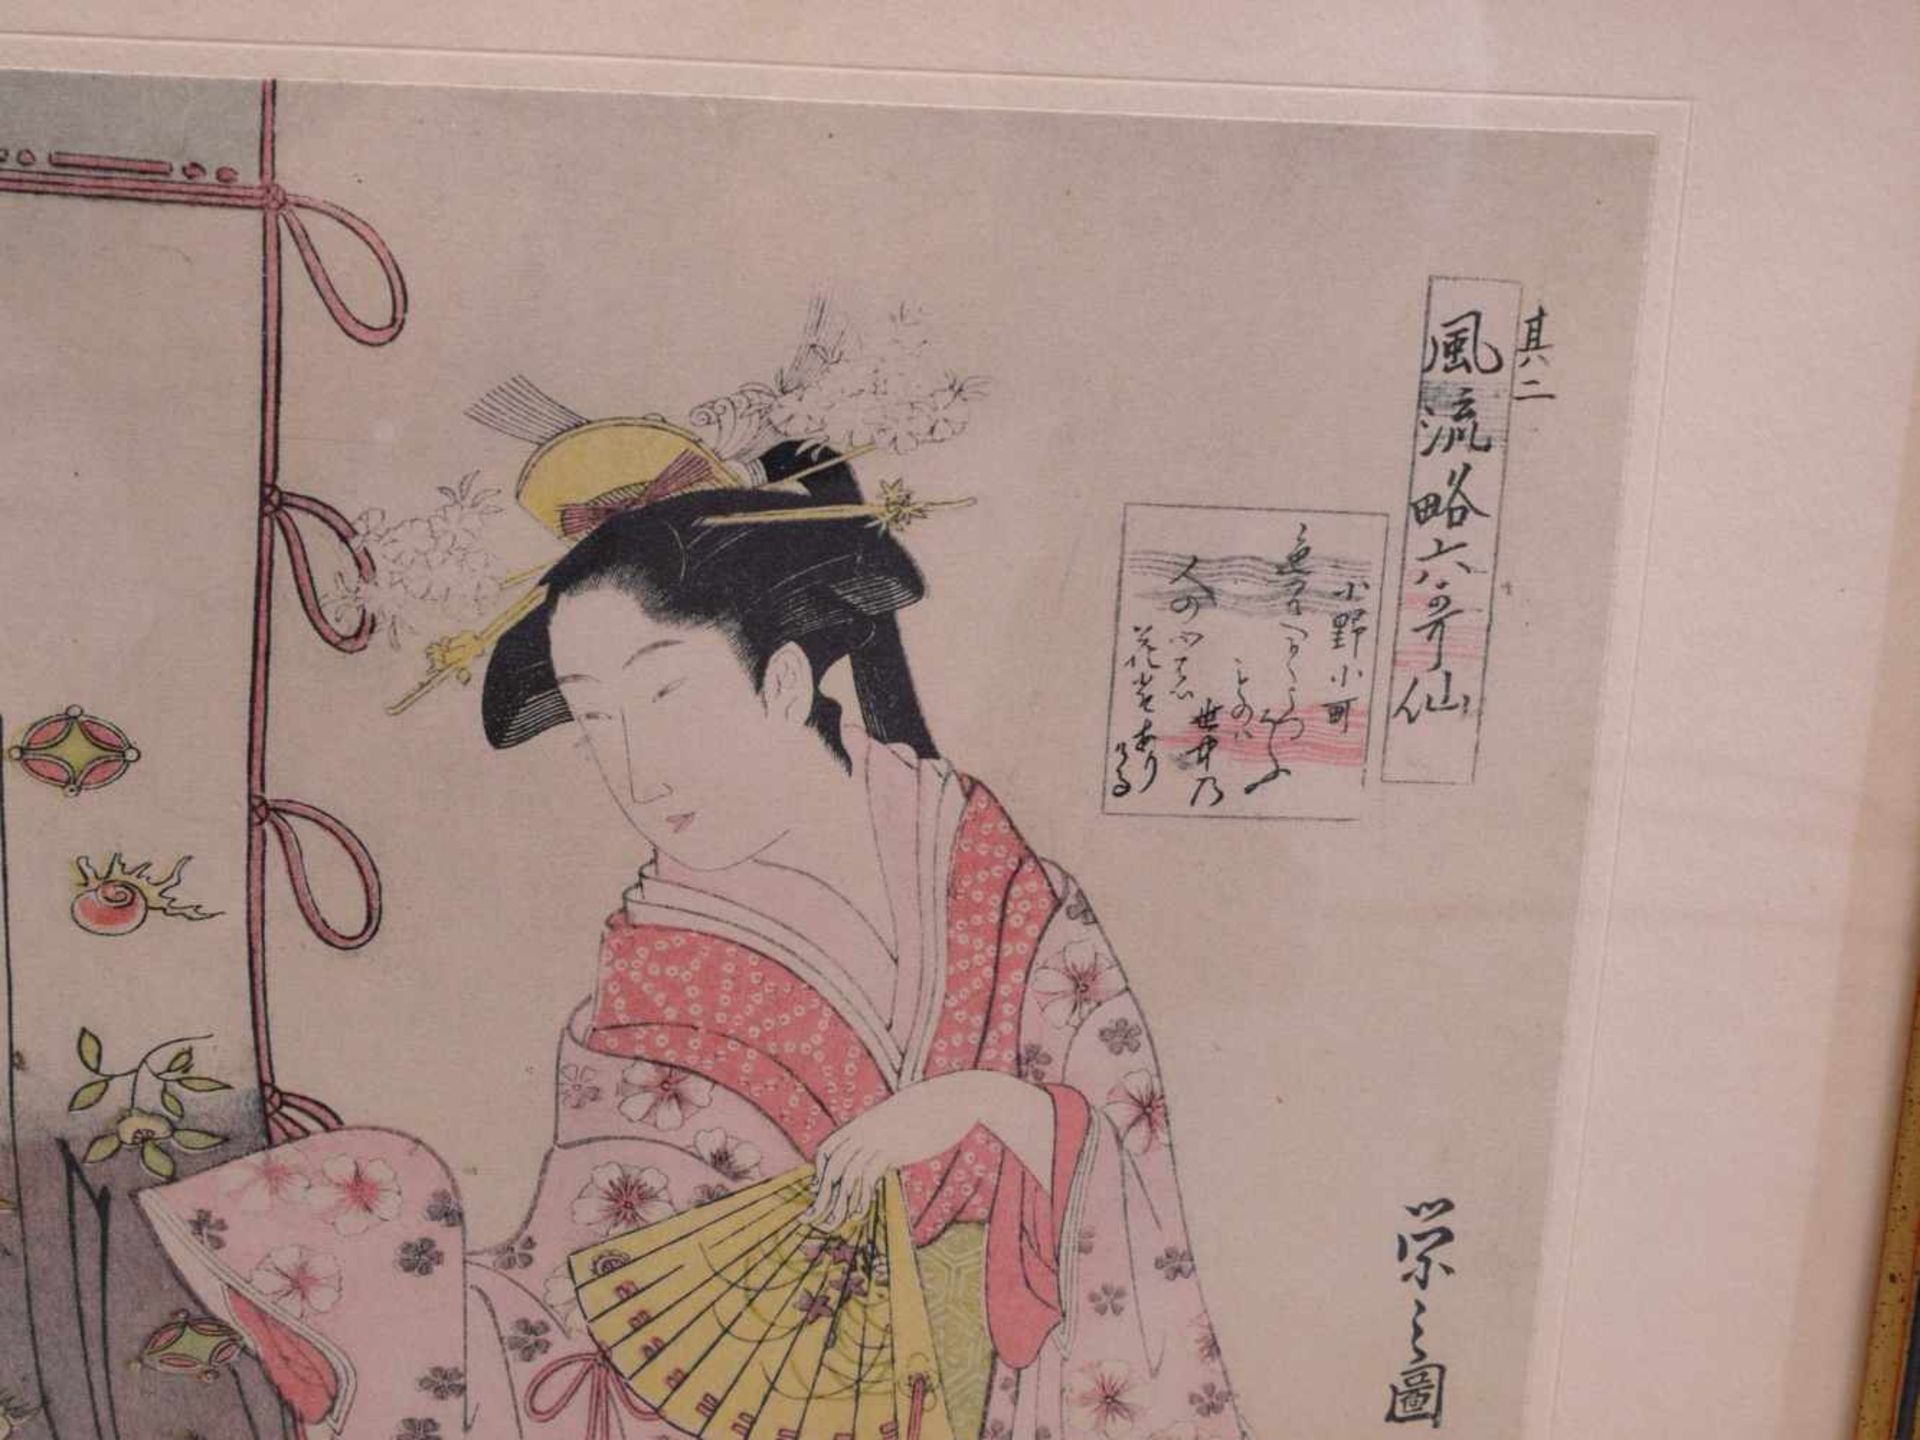 3 japanische ukiyo-e Holzdrucke 19. Jhd.Interieurdarstellungen mit jungen Mädchen beim Zeitvertreib. - Bild 5 aus 8